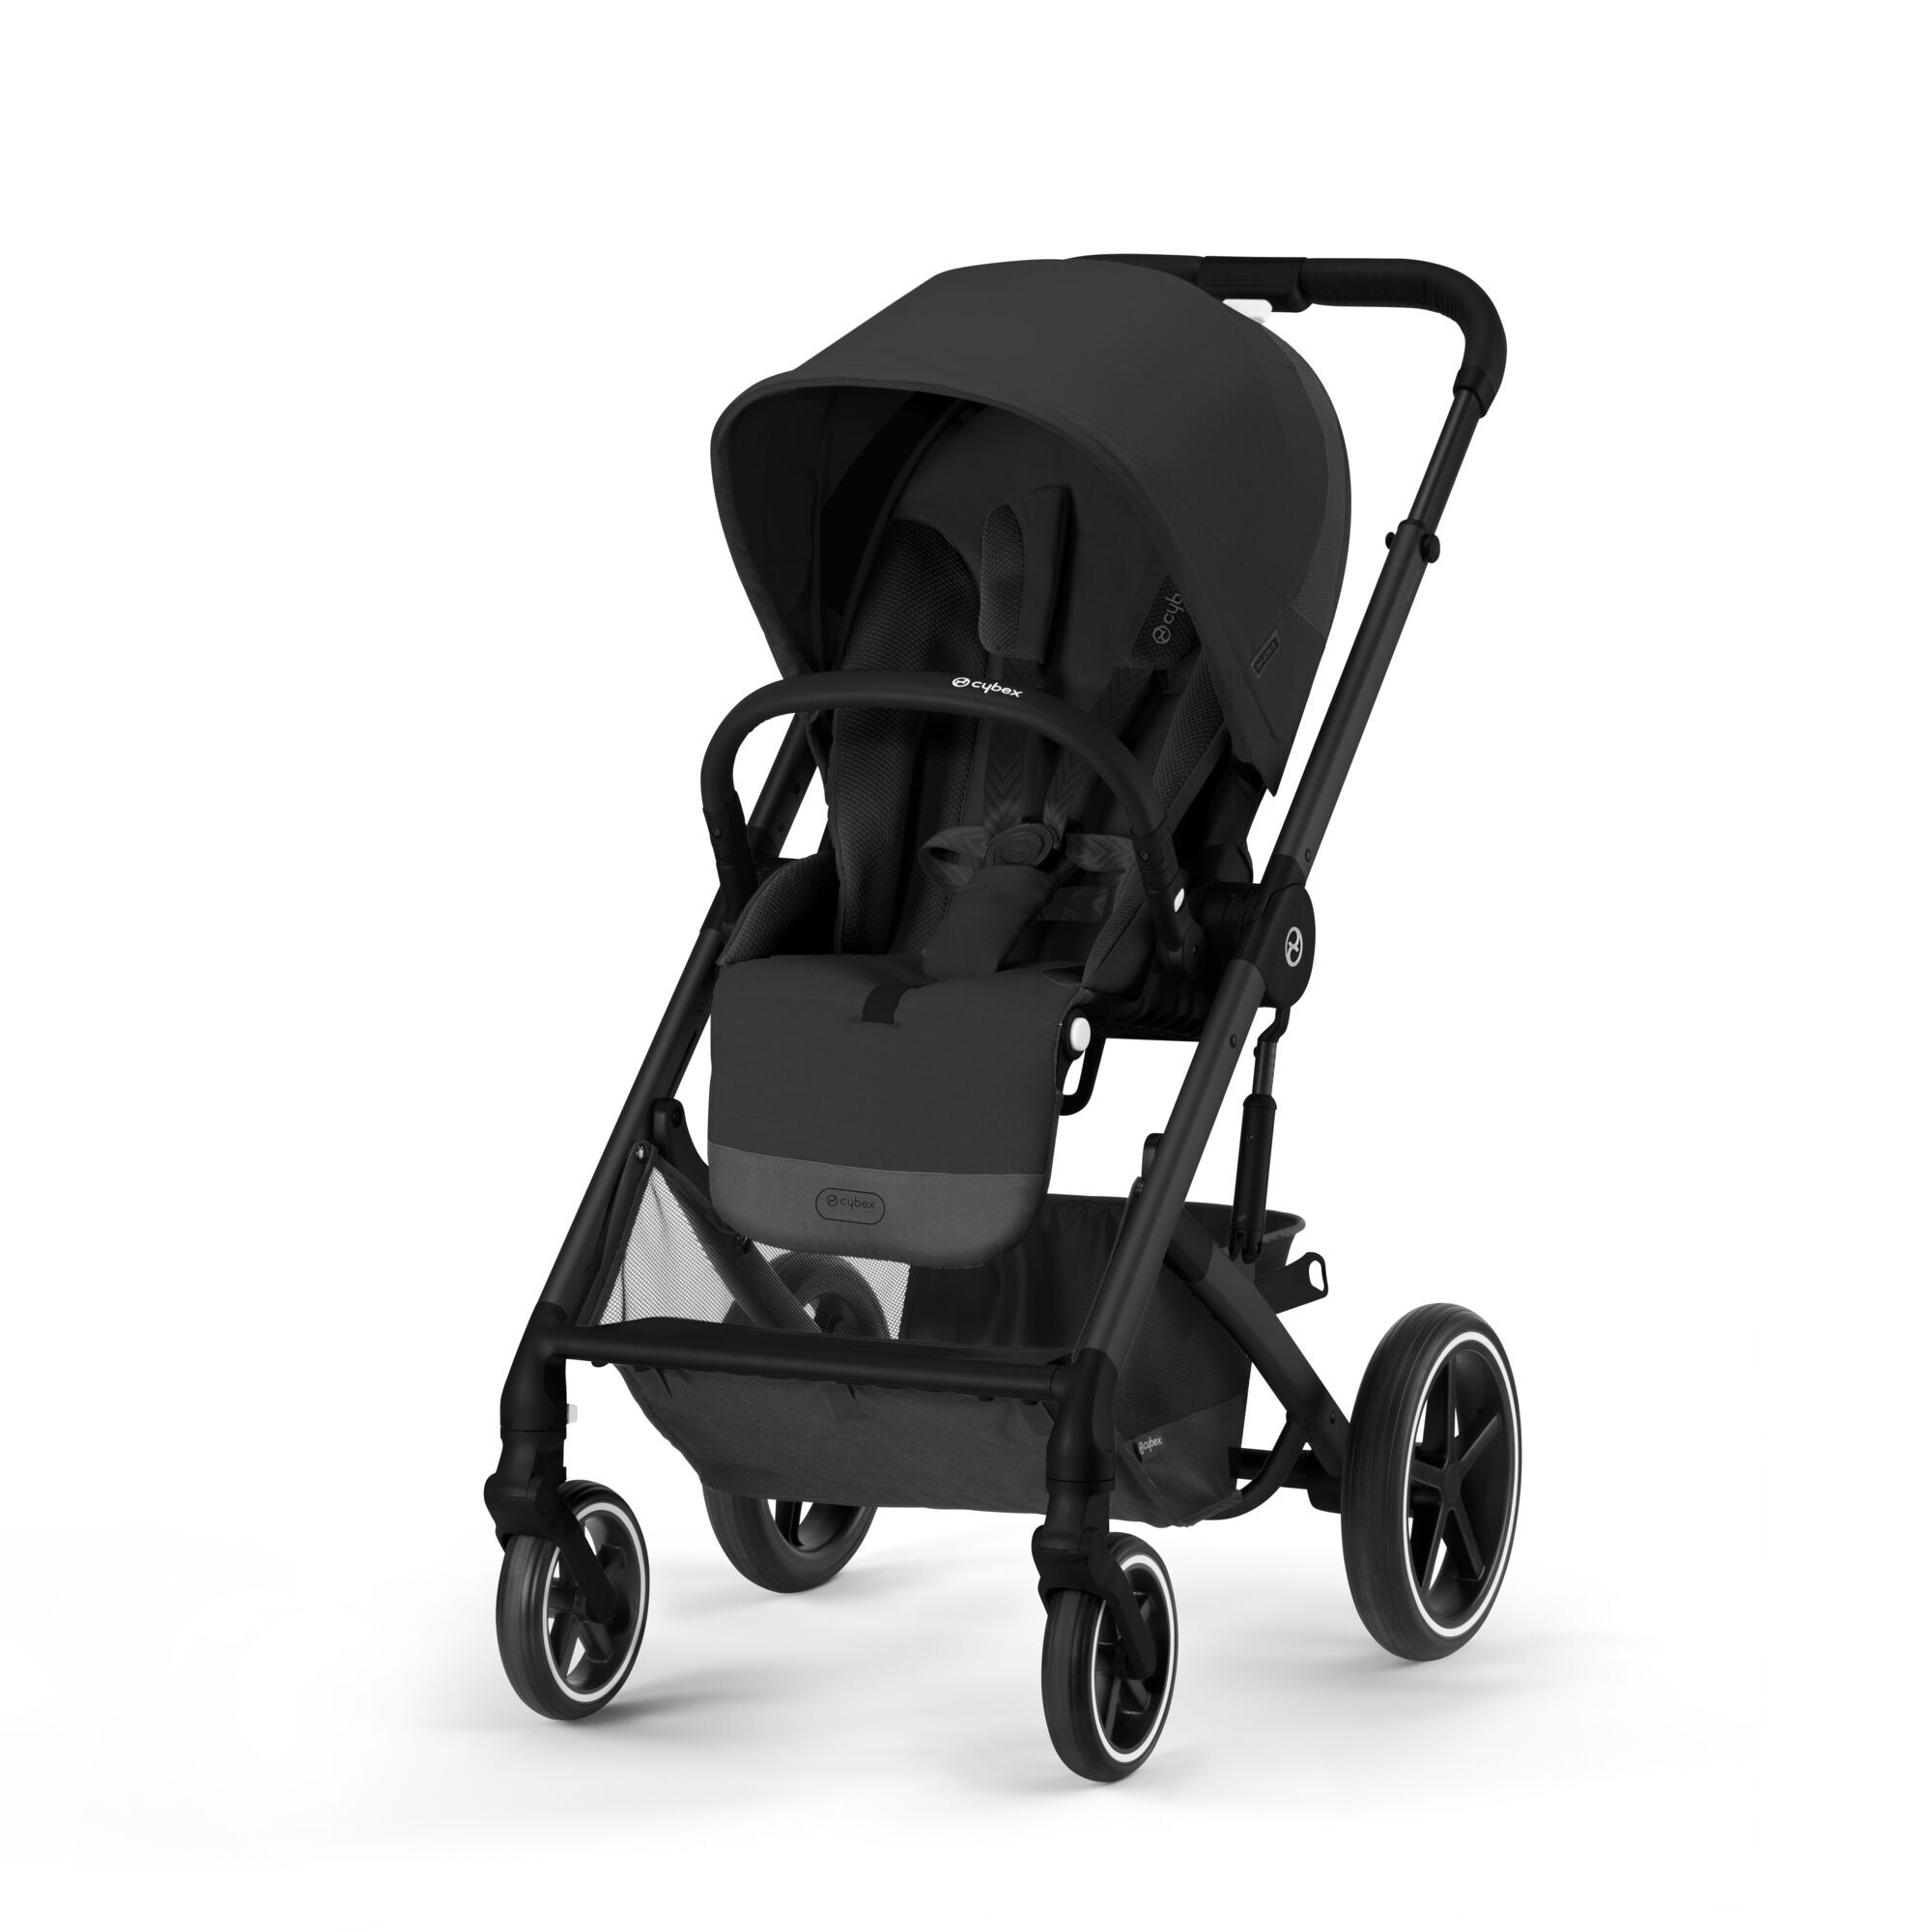 Porte-gobelet de siège auto CYBEX pour enfants Noir : : Bébé et  Puériculture